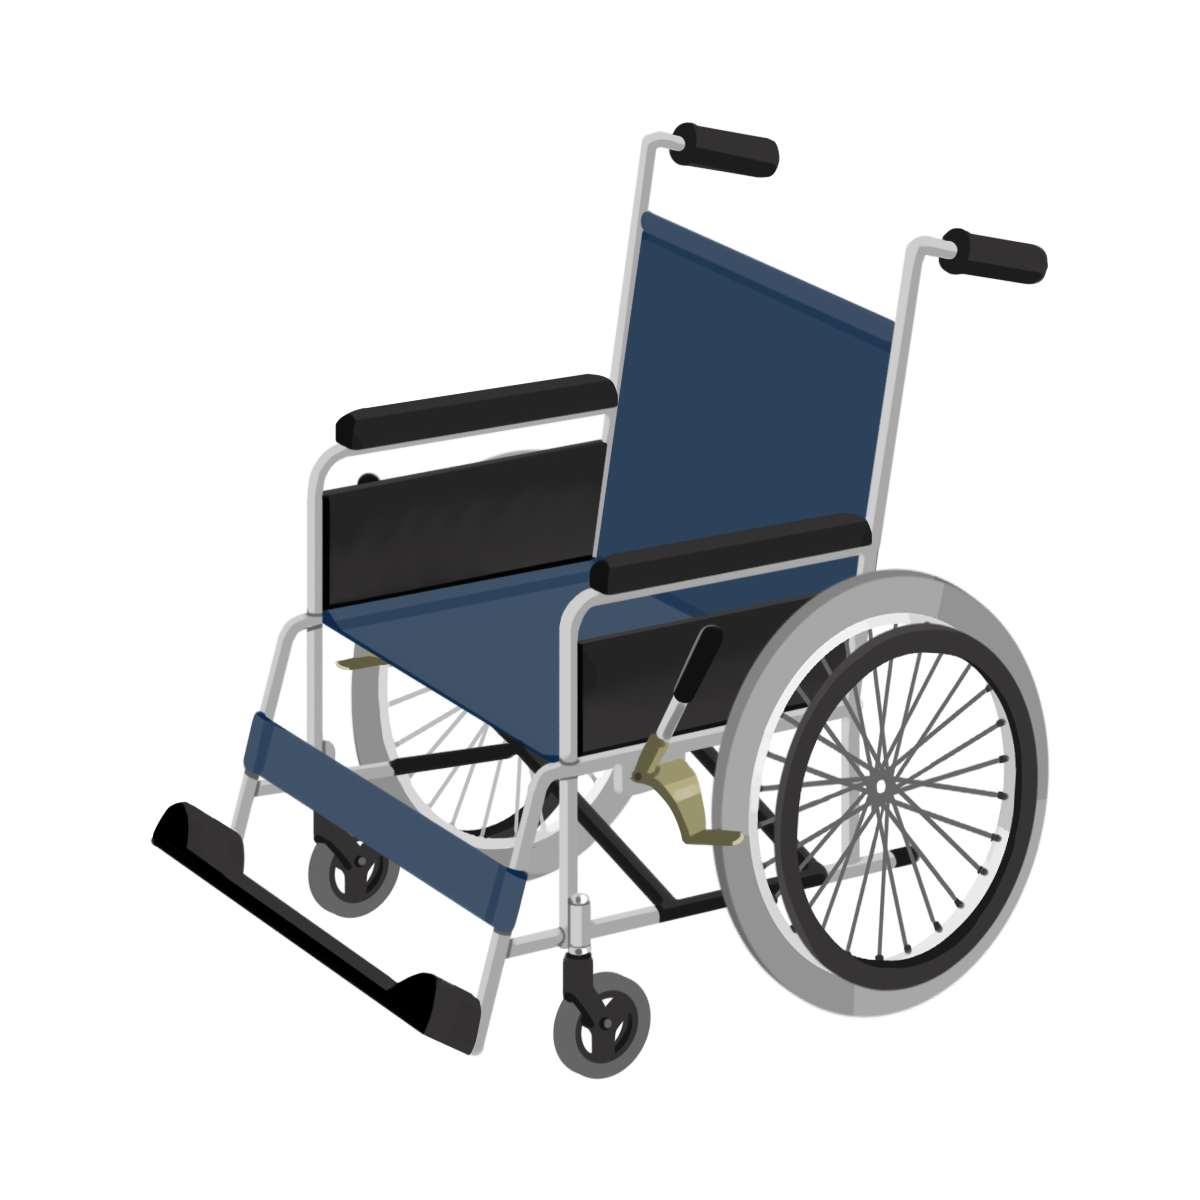 トップレート 車椅子 イラスト 無料 無料イラスト素材 かわいいフリー素材 素材のプ